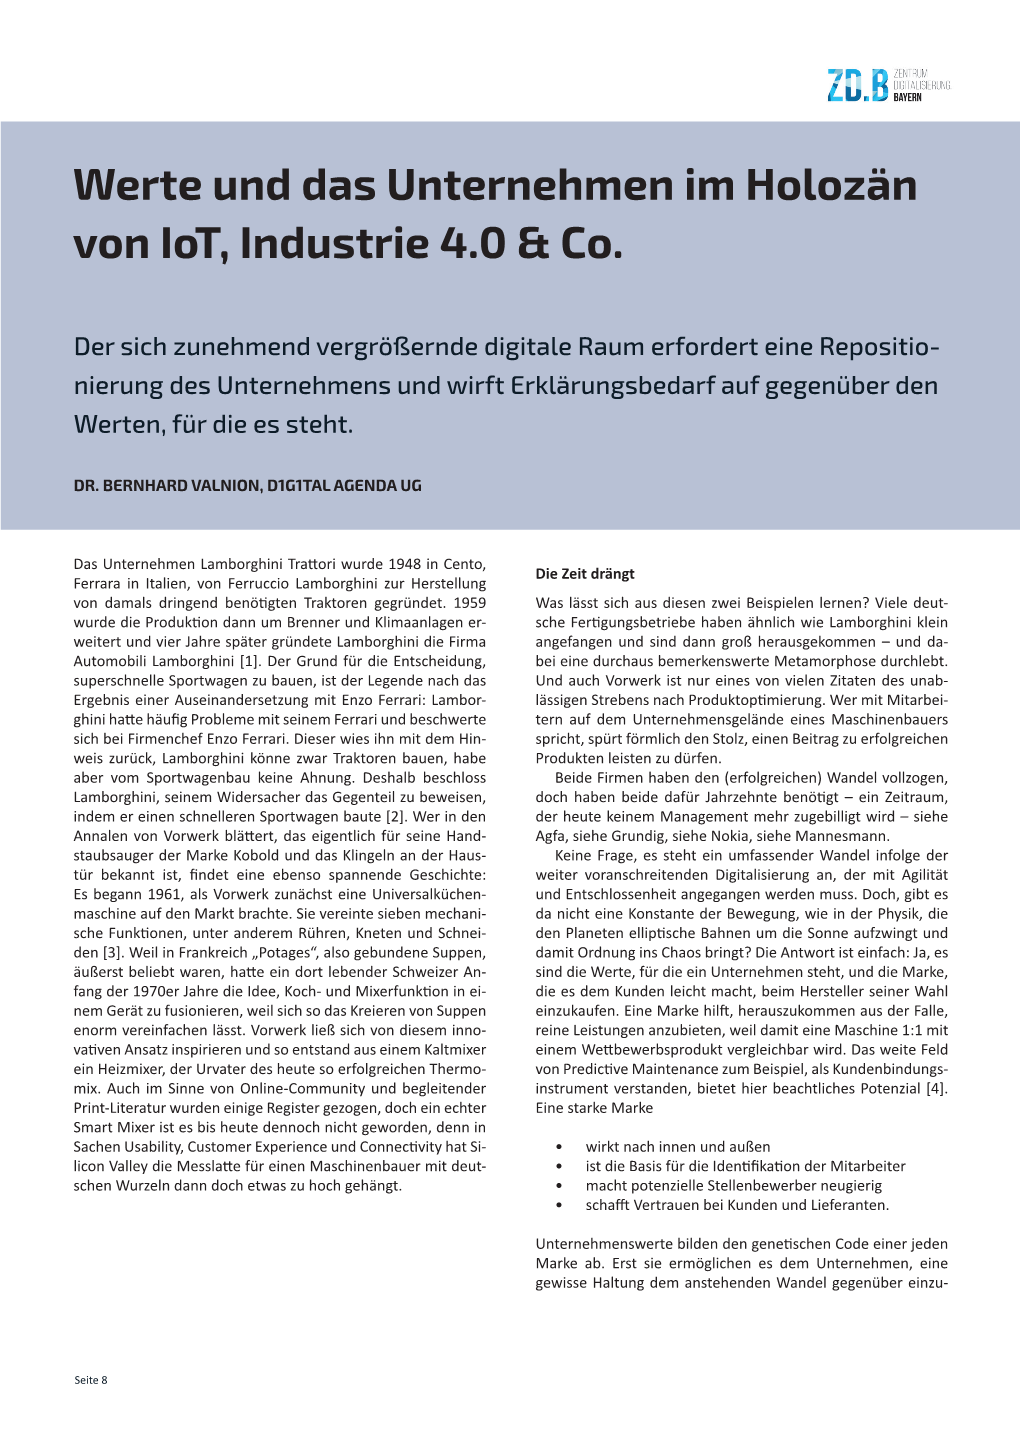 Werte Und Das Unternehmen Im Holozän Von Iot, Industrie 4.0 &